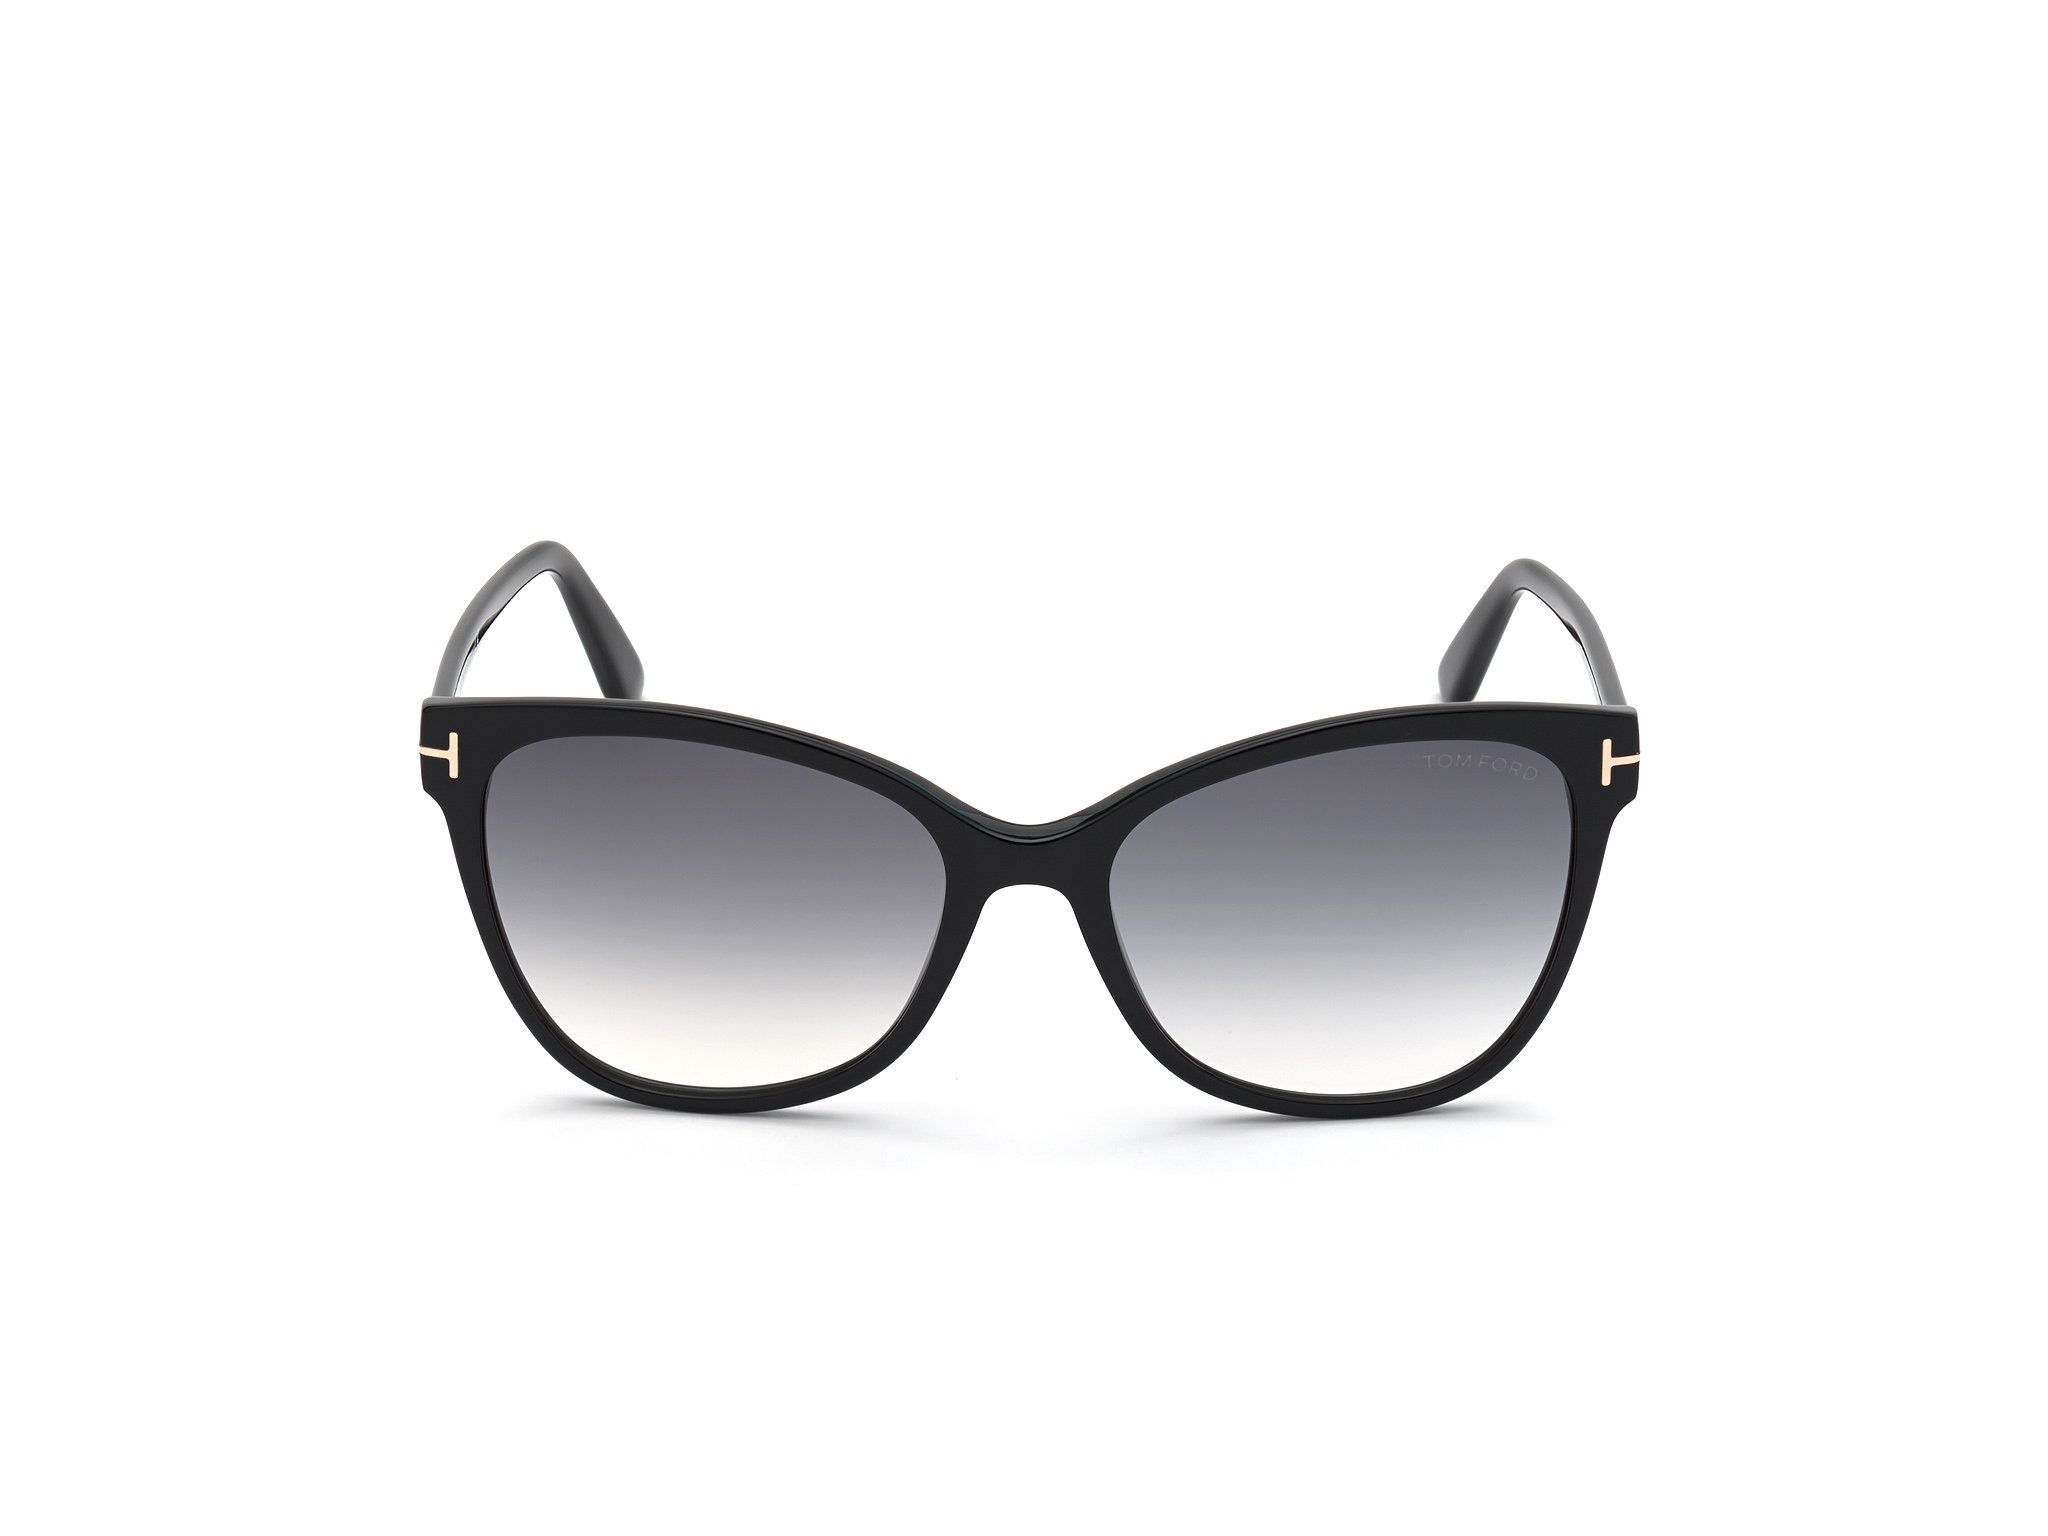 Das Bild zeigt die Sonnenbrille ANI FT0844 von der Marke Tom Ford in schwarz frontal